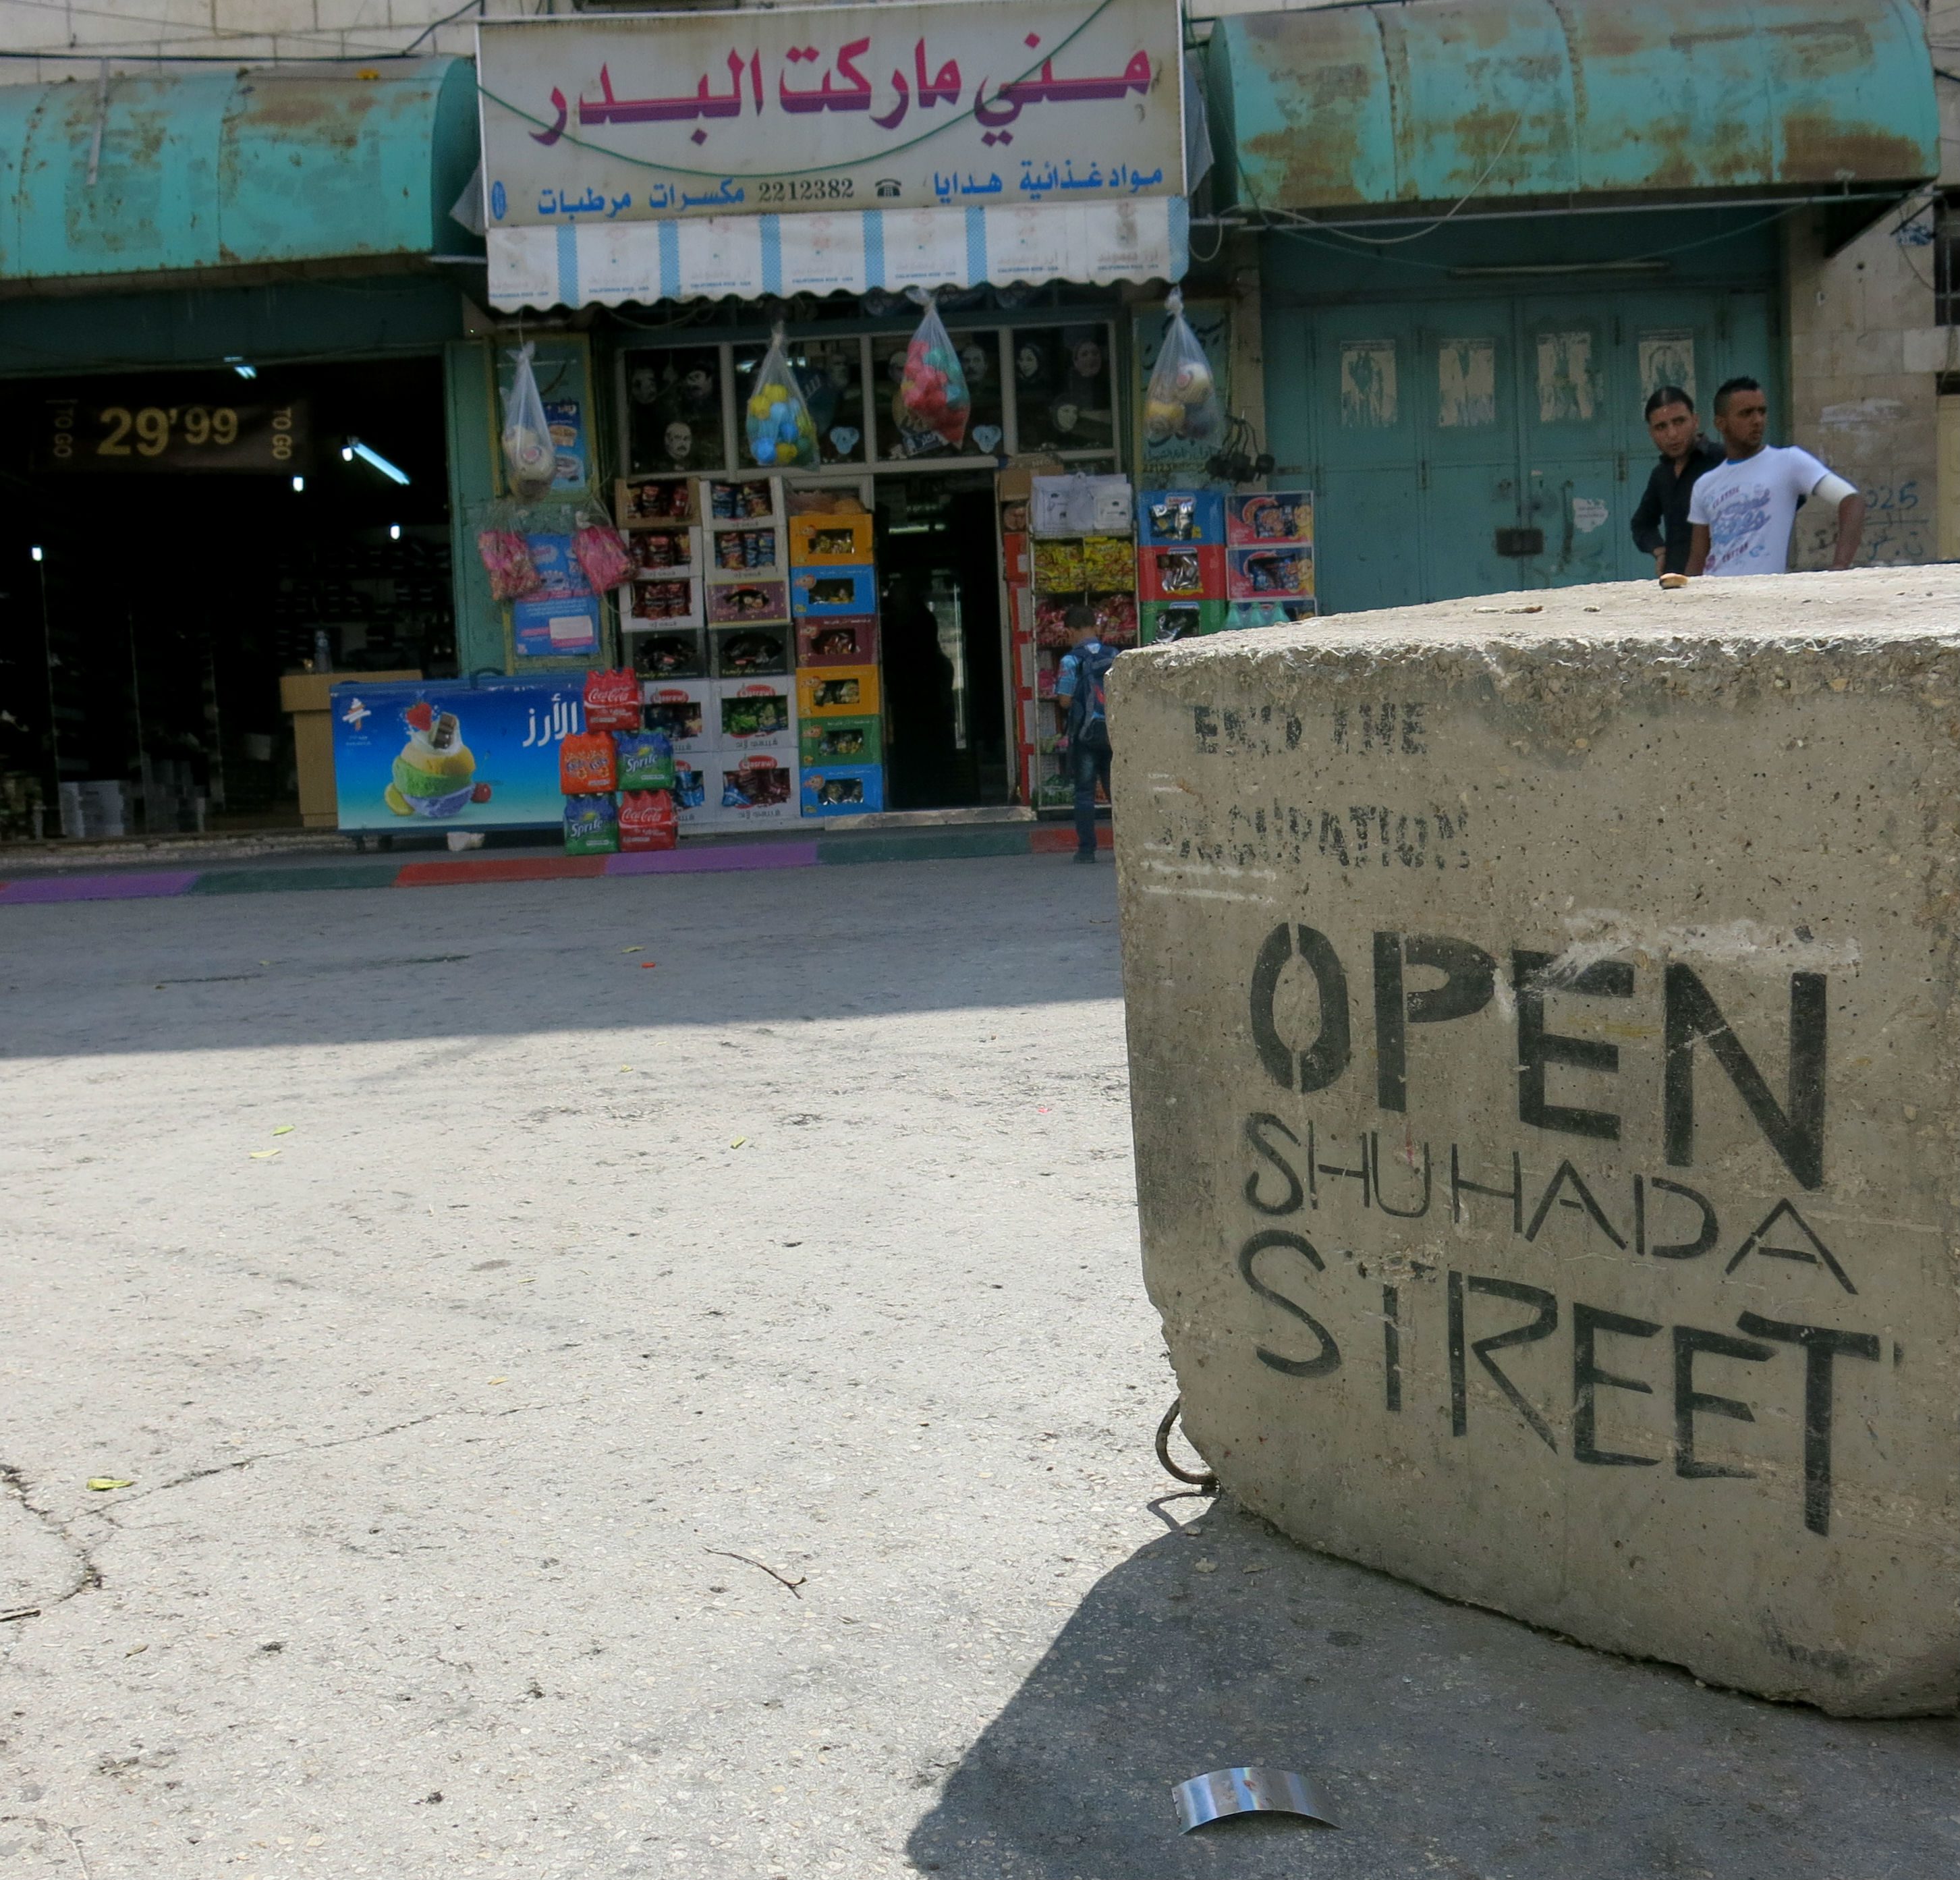 'Open Shuhada-street' står der på en cementblok udenfor den israelske bosættelse